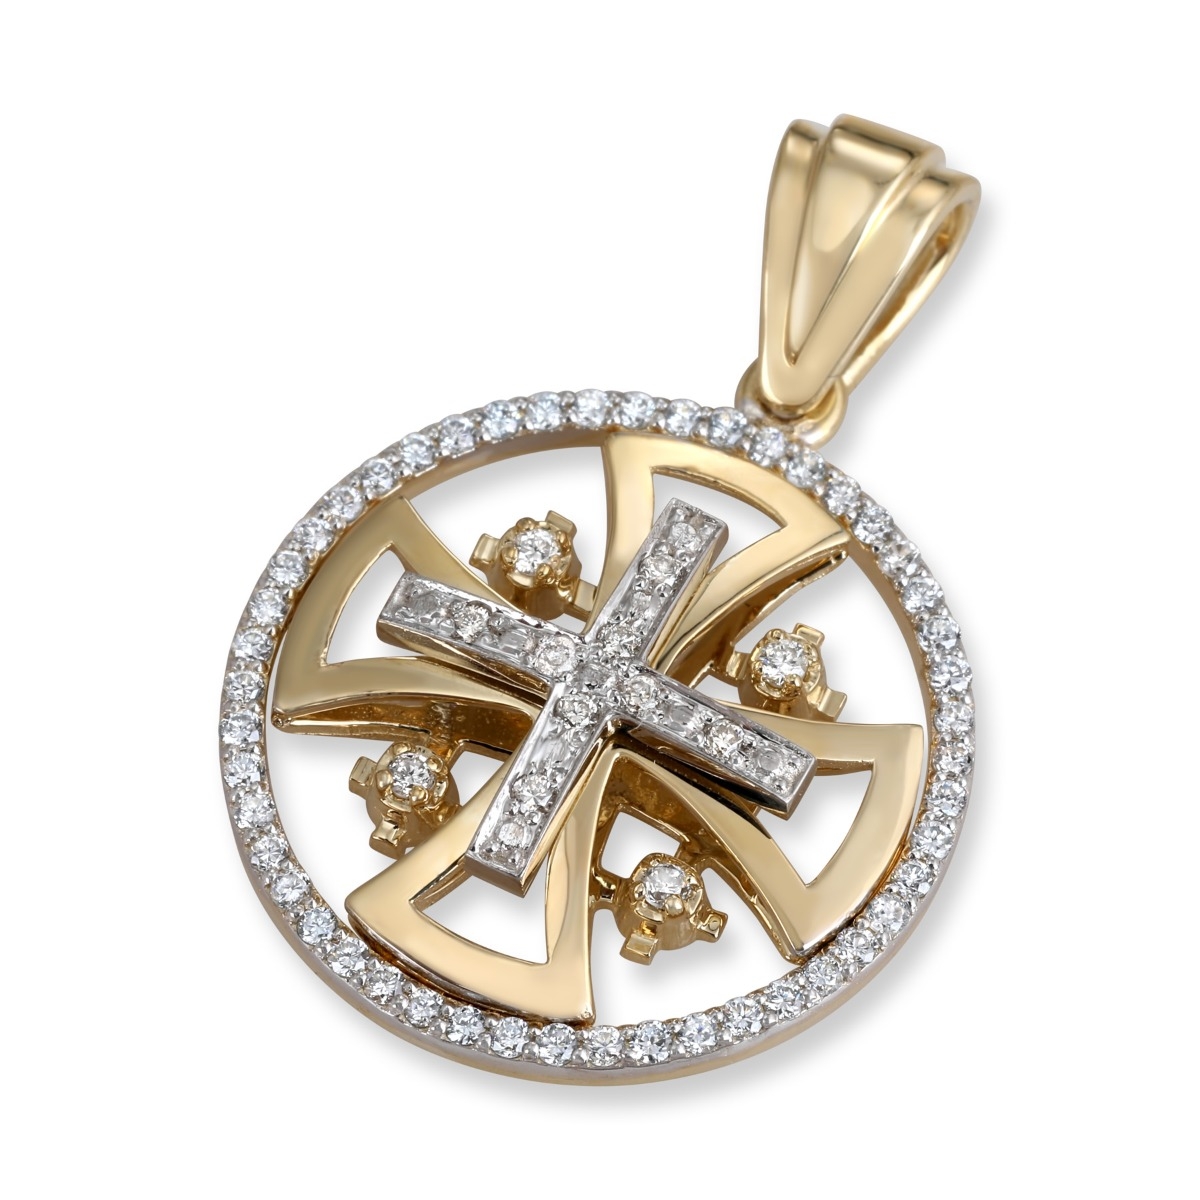 Anbinder Jewelry 14K Yellow & White Gold and Diamond Splayed Jerusalem Cross Halo Pendant with 60 Diamonds - 1